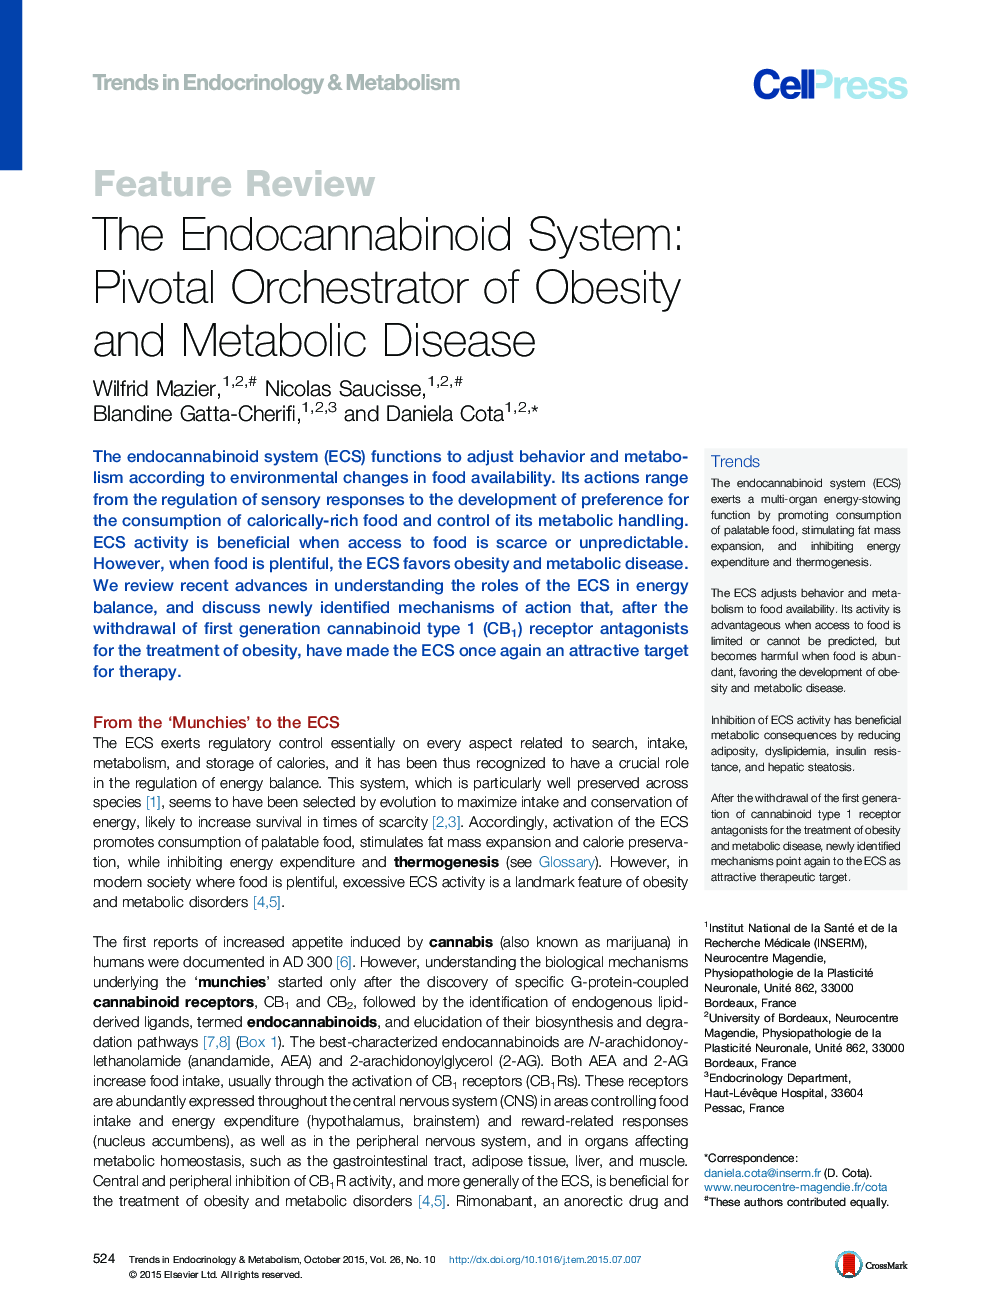 سیستم اندوکانابینوئید: ارکستر محوری چاقی و بیماری متابولیسم 